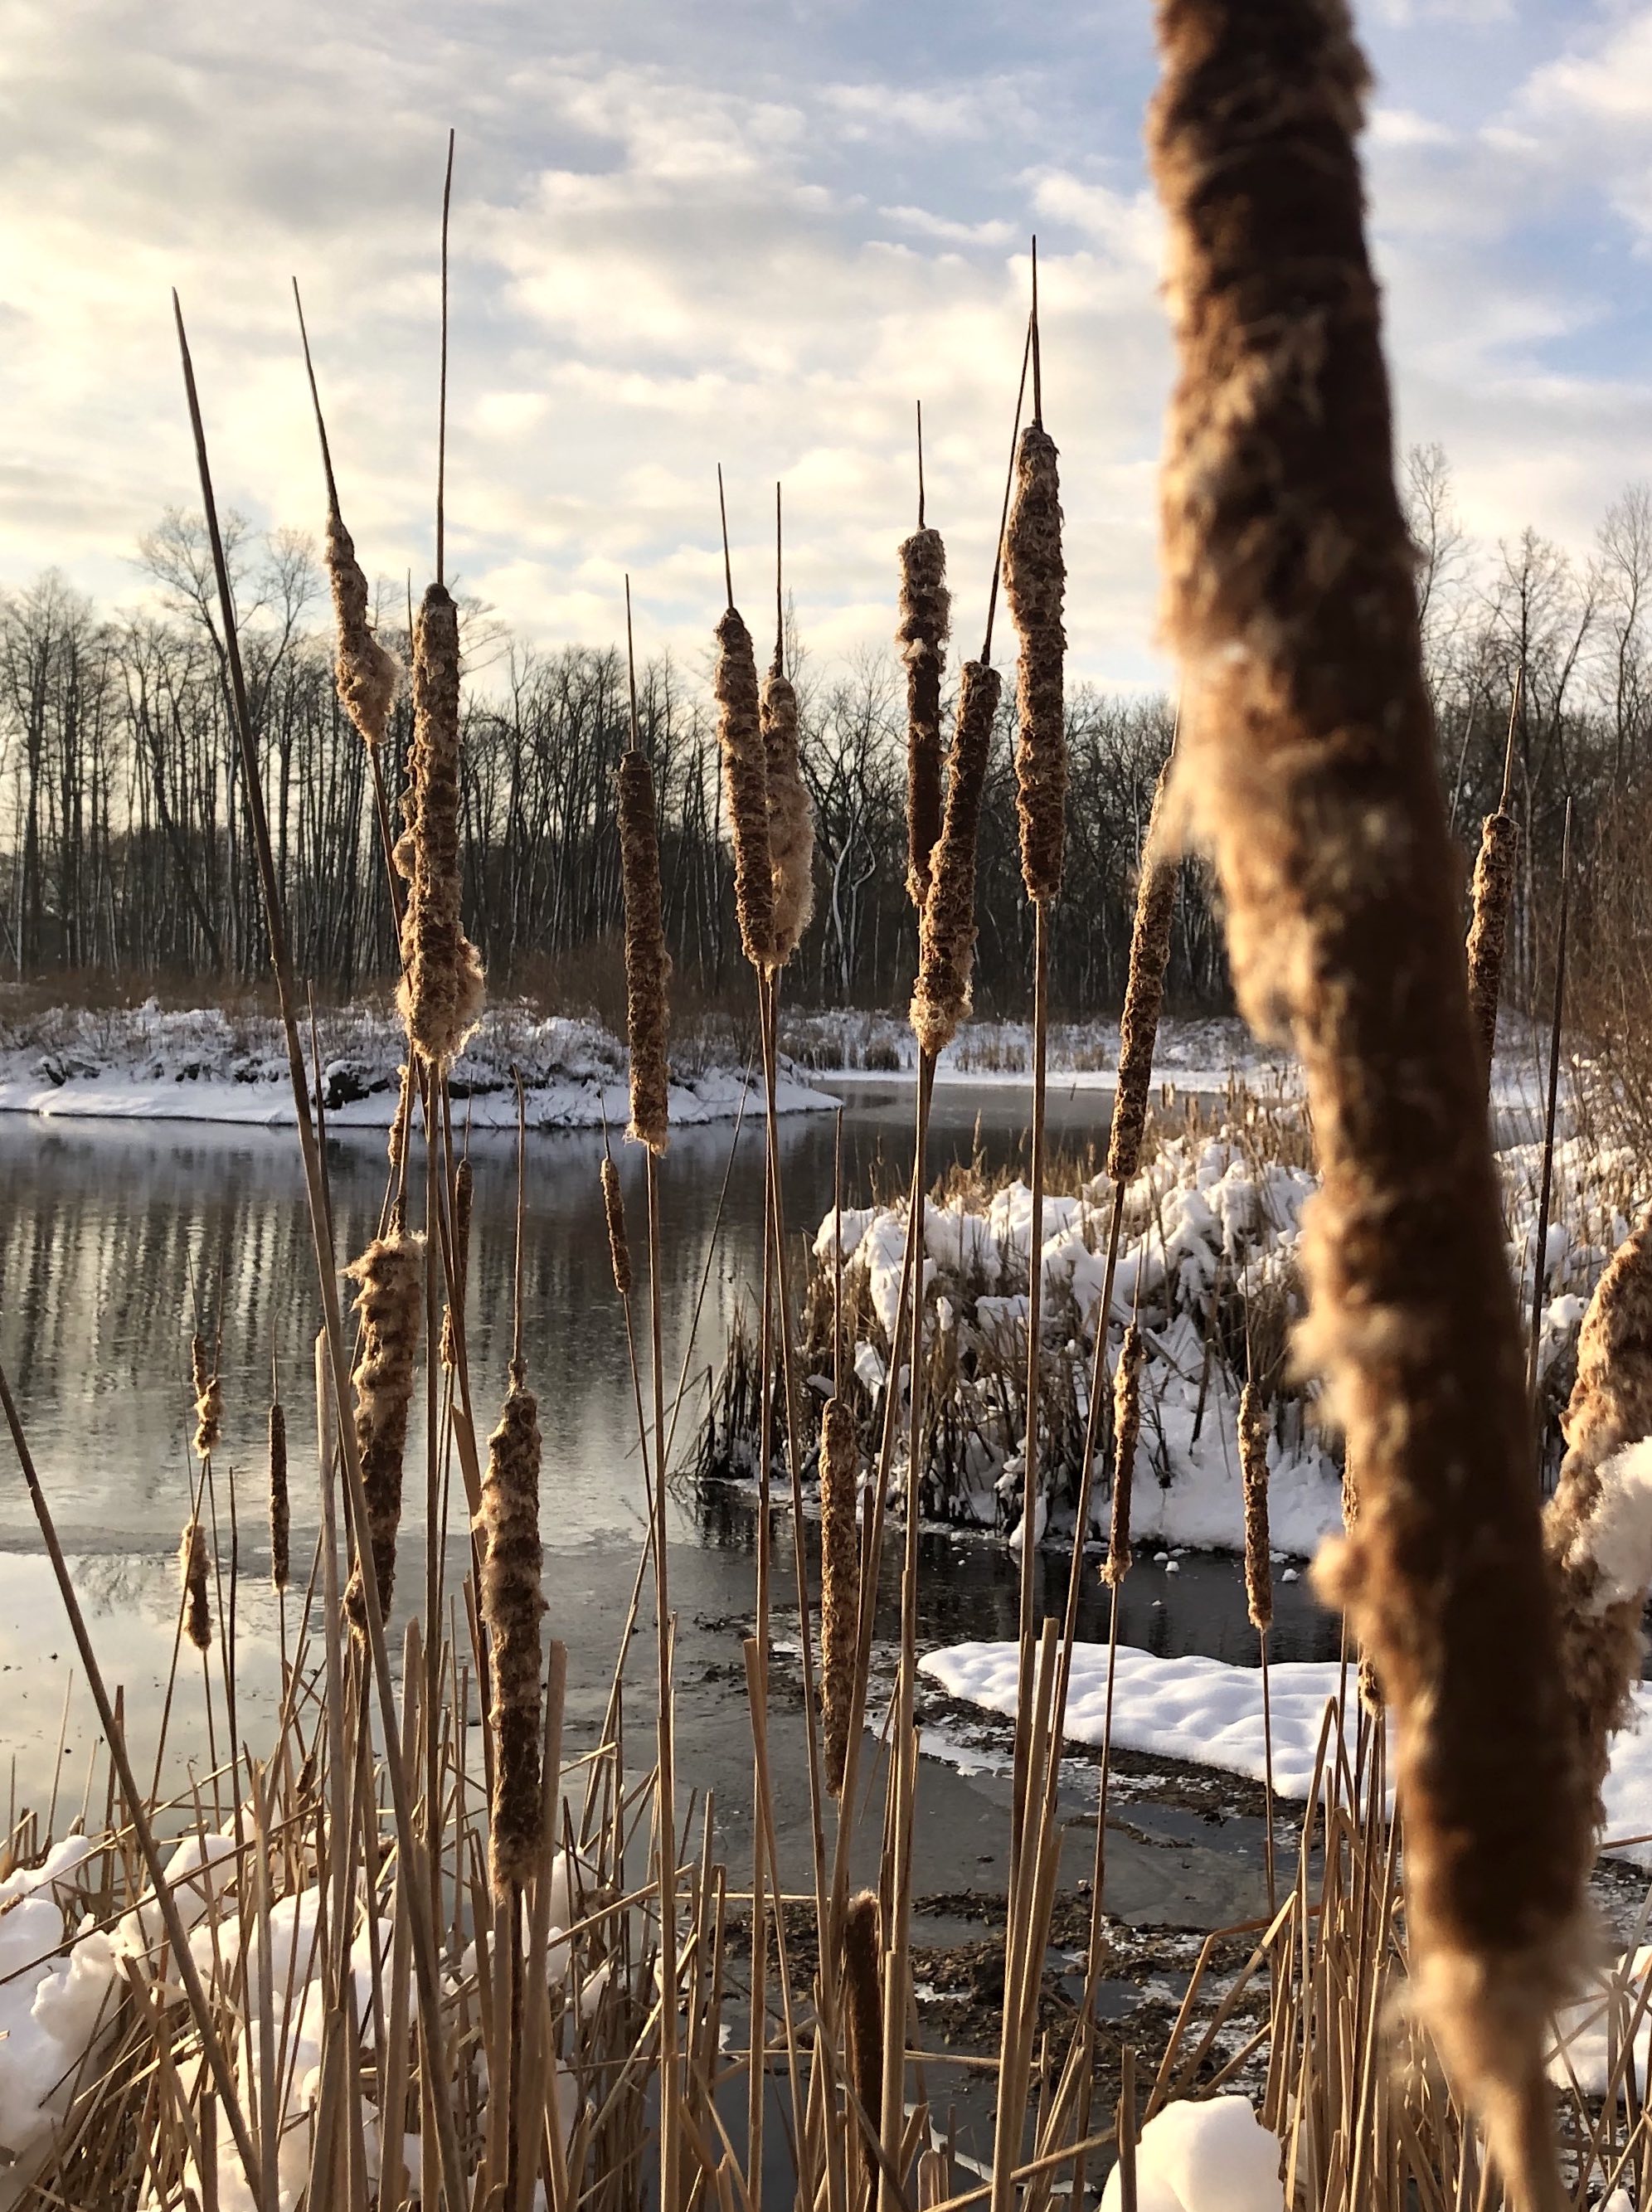 Cattails along shore of Marion Dunn Pond on December 16, 2020.